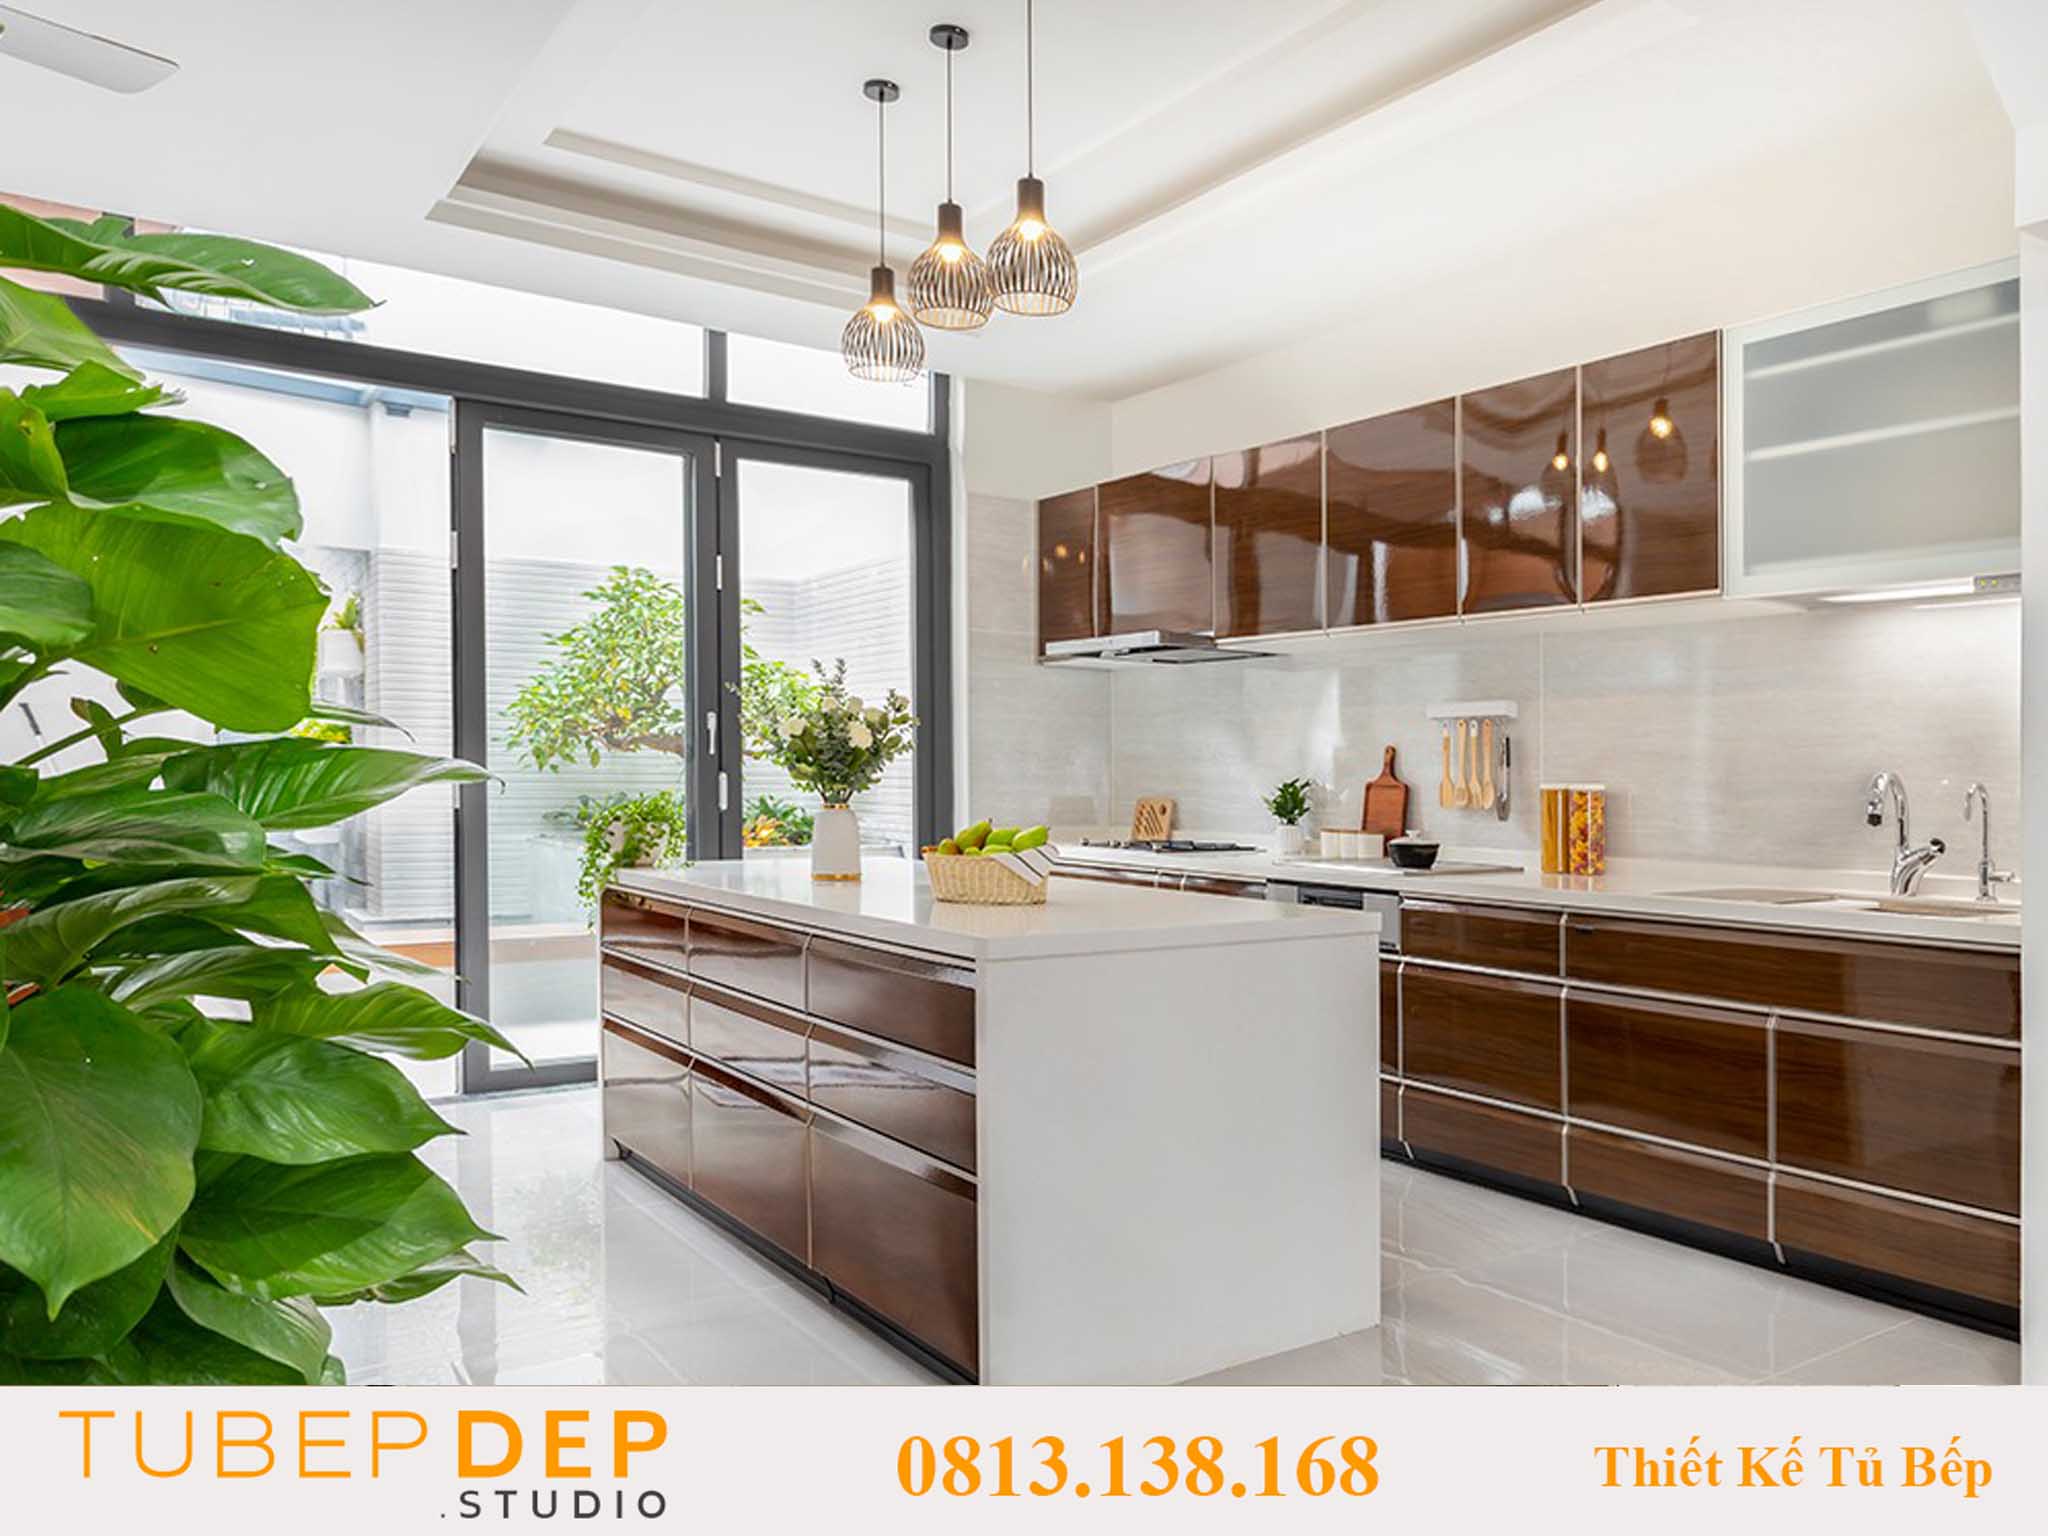 Tubepdep.studio là xưởng mộc thiết kế tủ bếp đẹp và rẻ tại Phú Nhuận